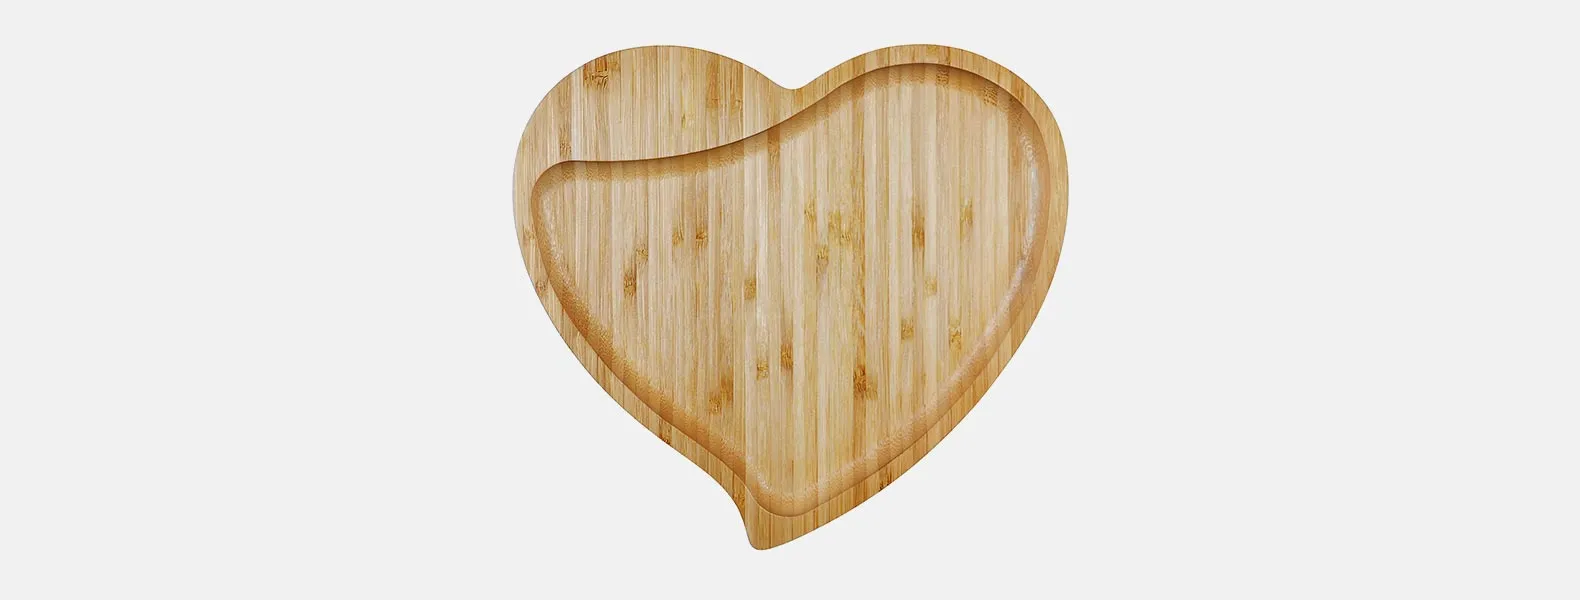 Petisqueira em bambu com formato de coração.